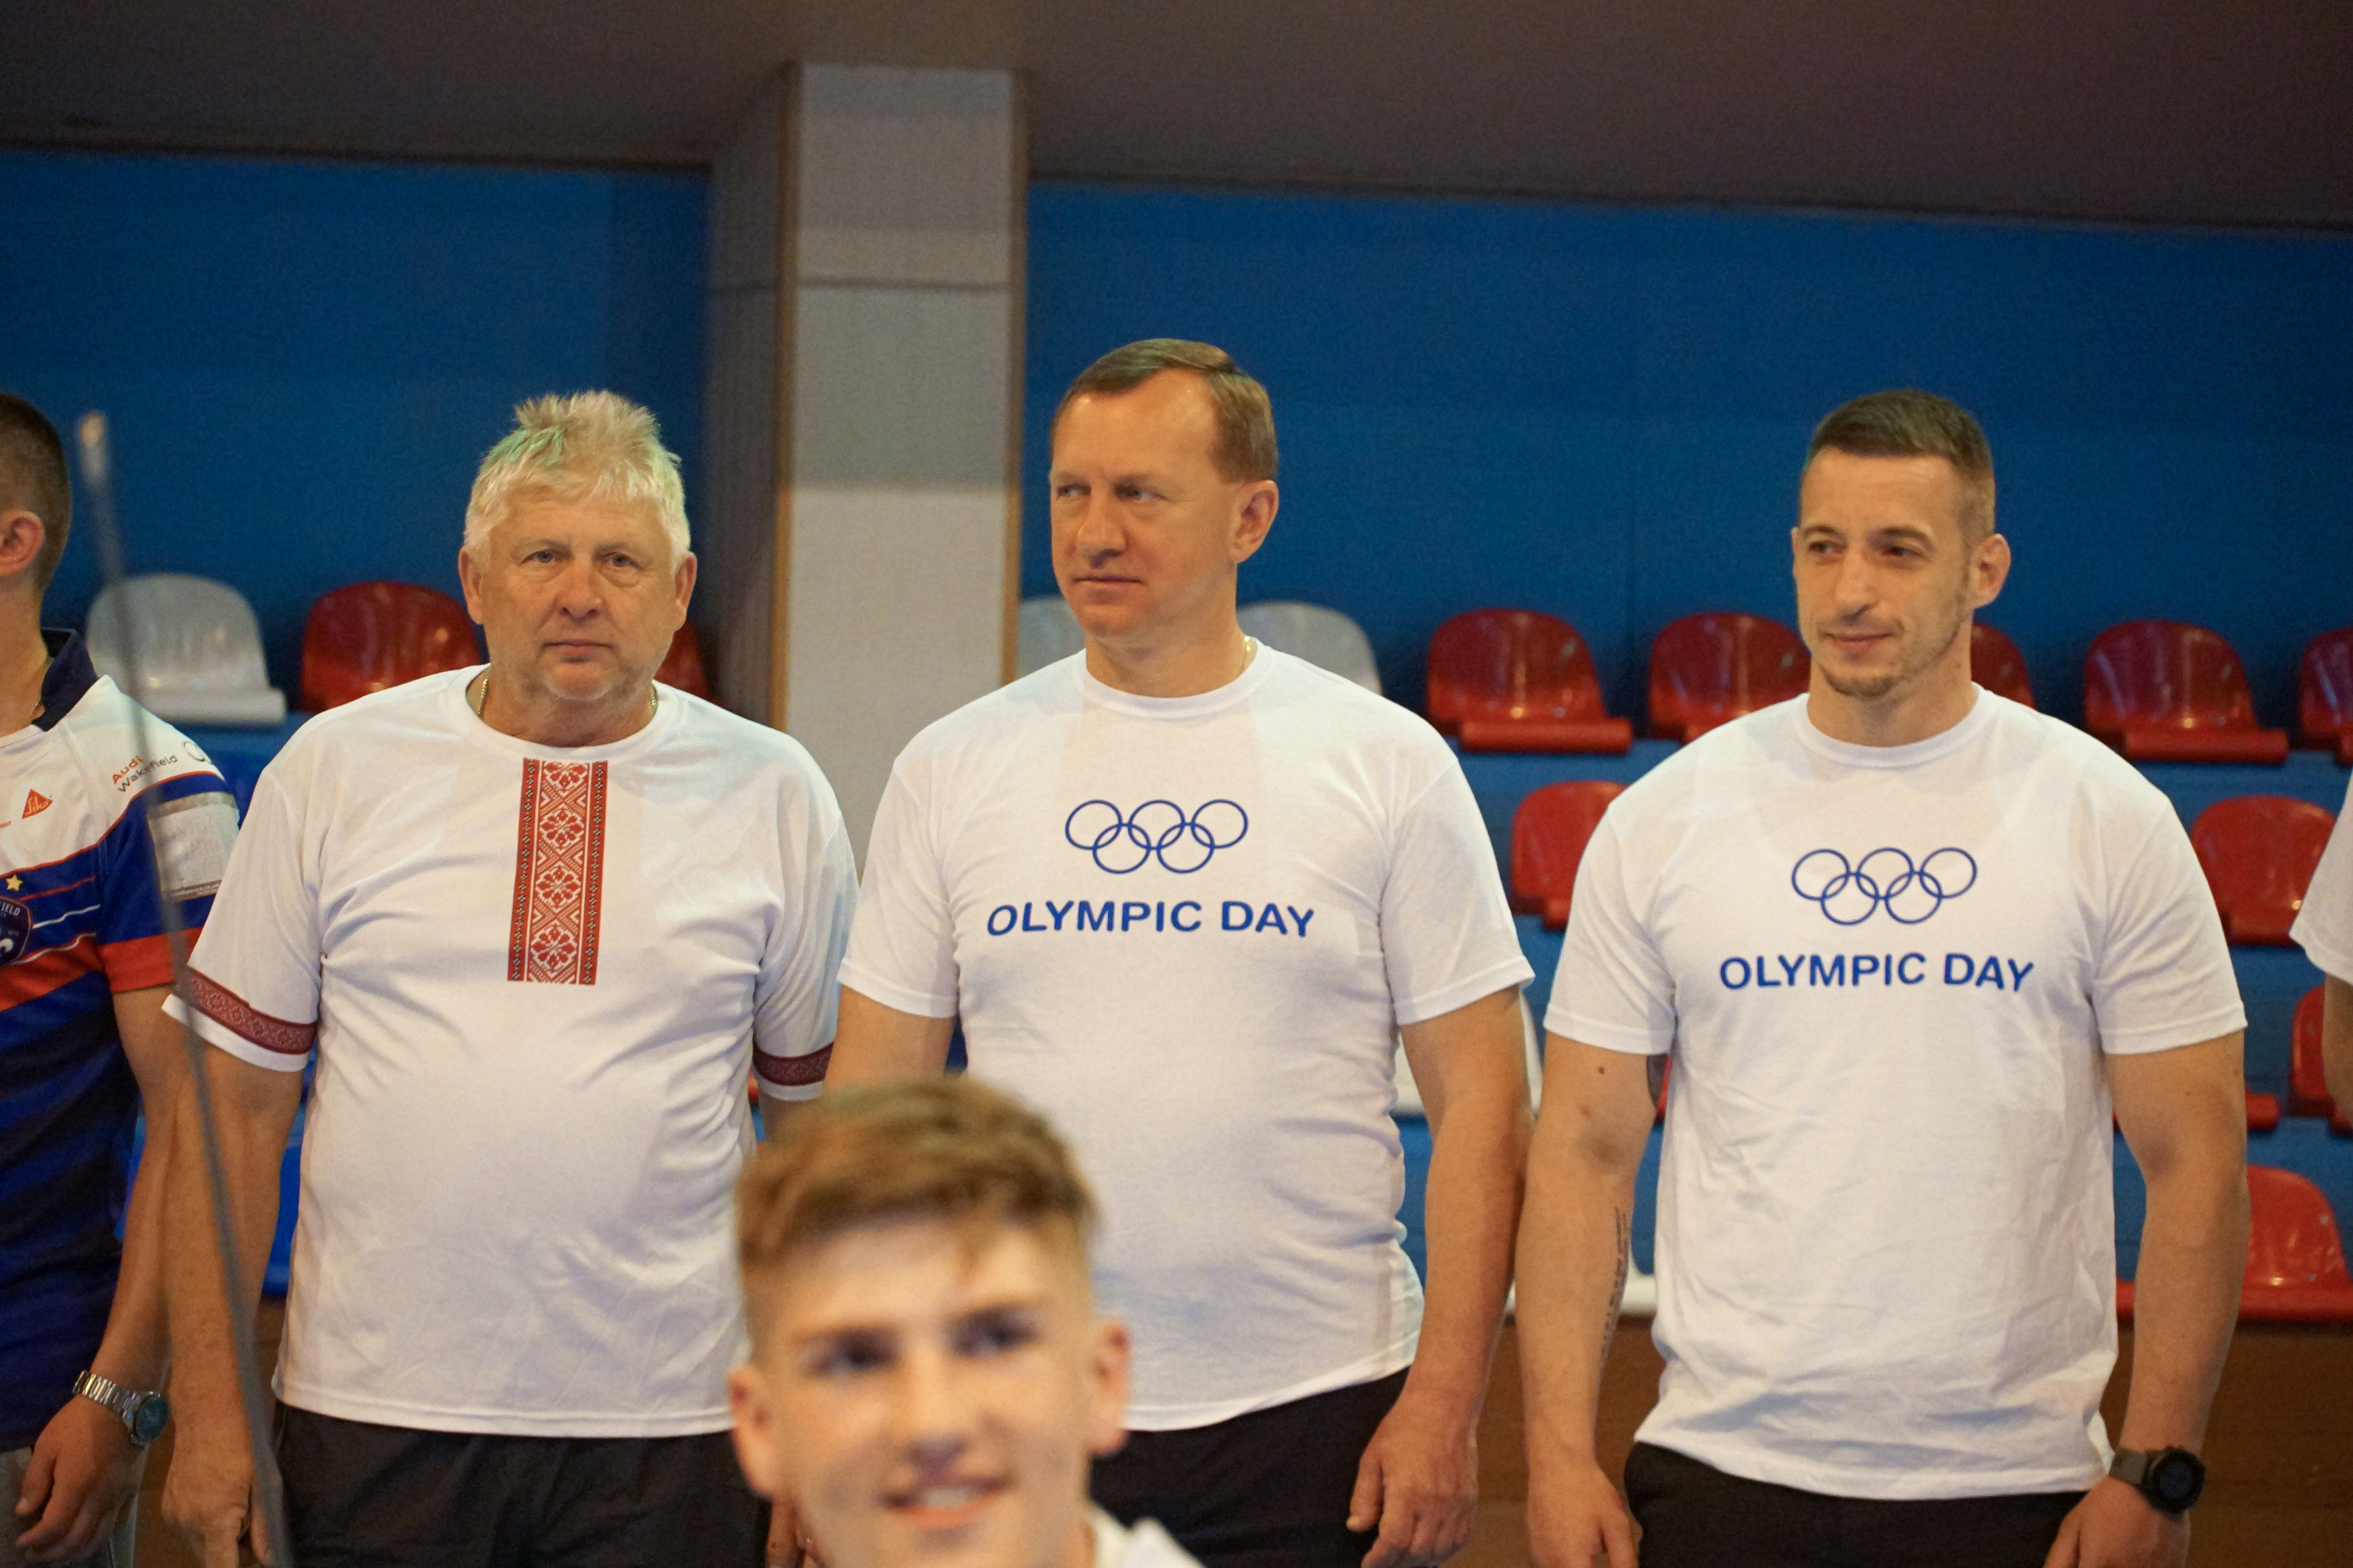 Ужгород долучився до естафети, організованої Національним олімпійським комітетом України з нагоди Олімпійського дня